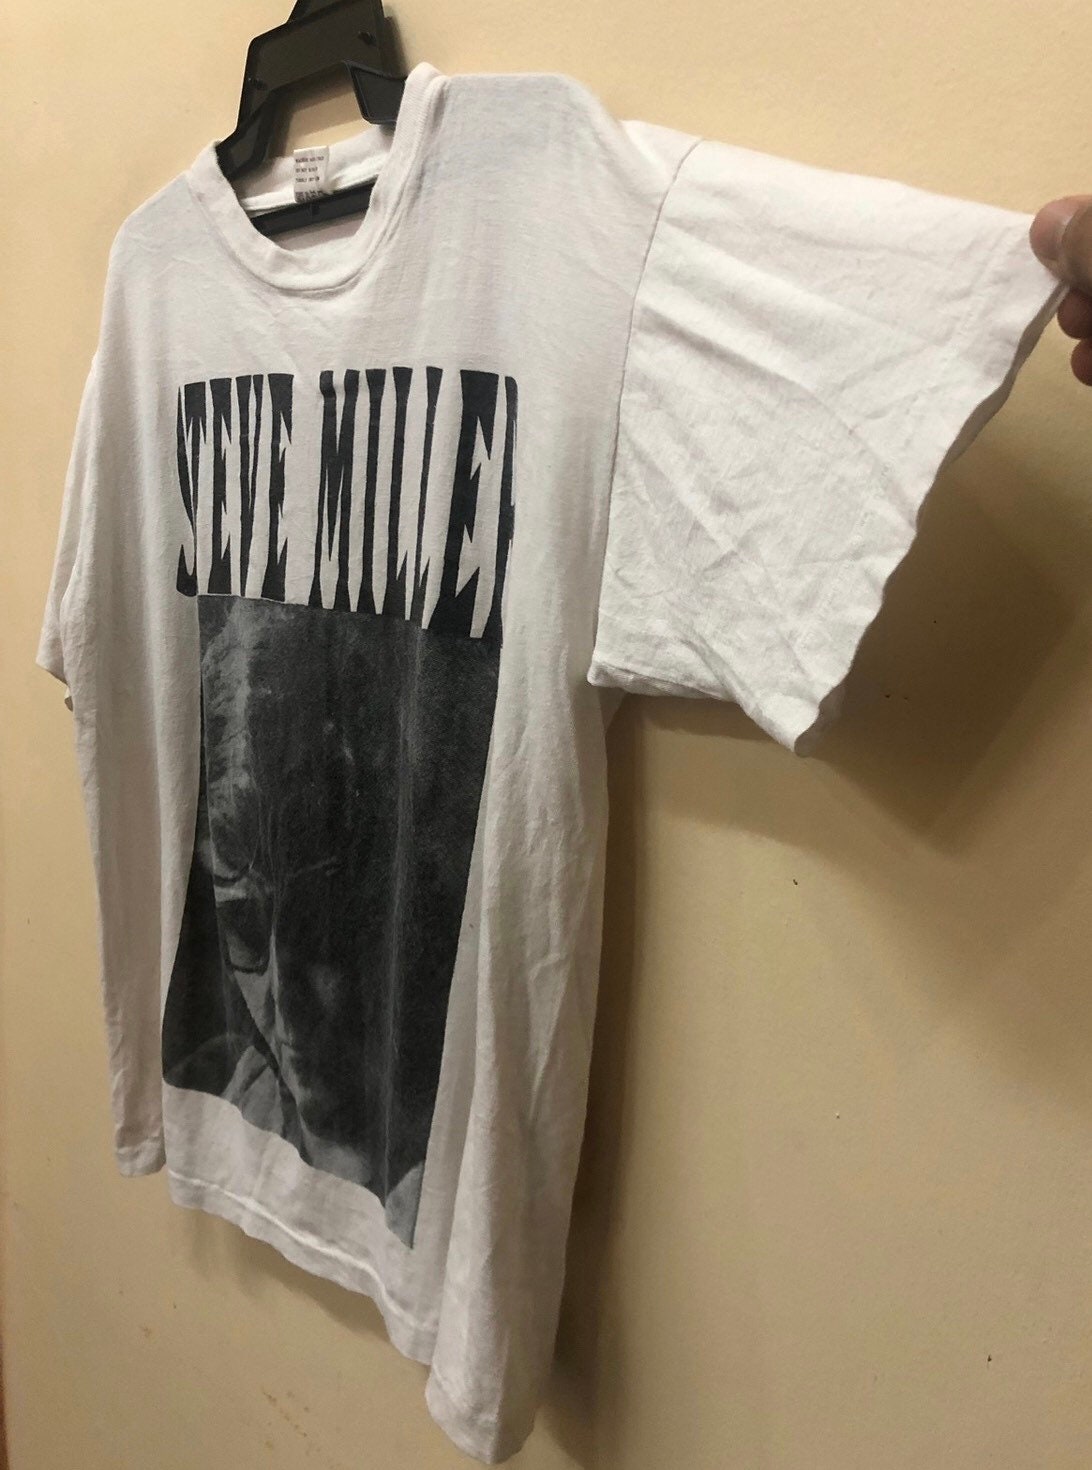 Vintage Steve Miller Tour 94 Bandtee Shirt 90s Soundgarden - Etsy